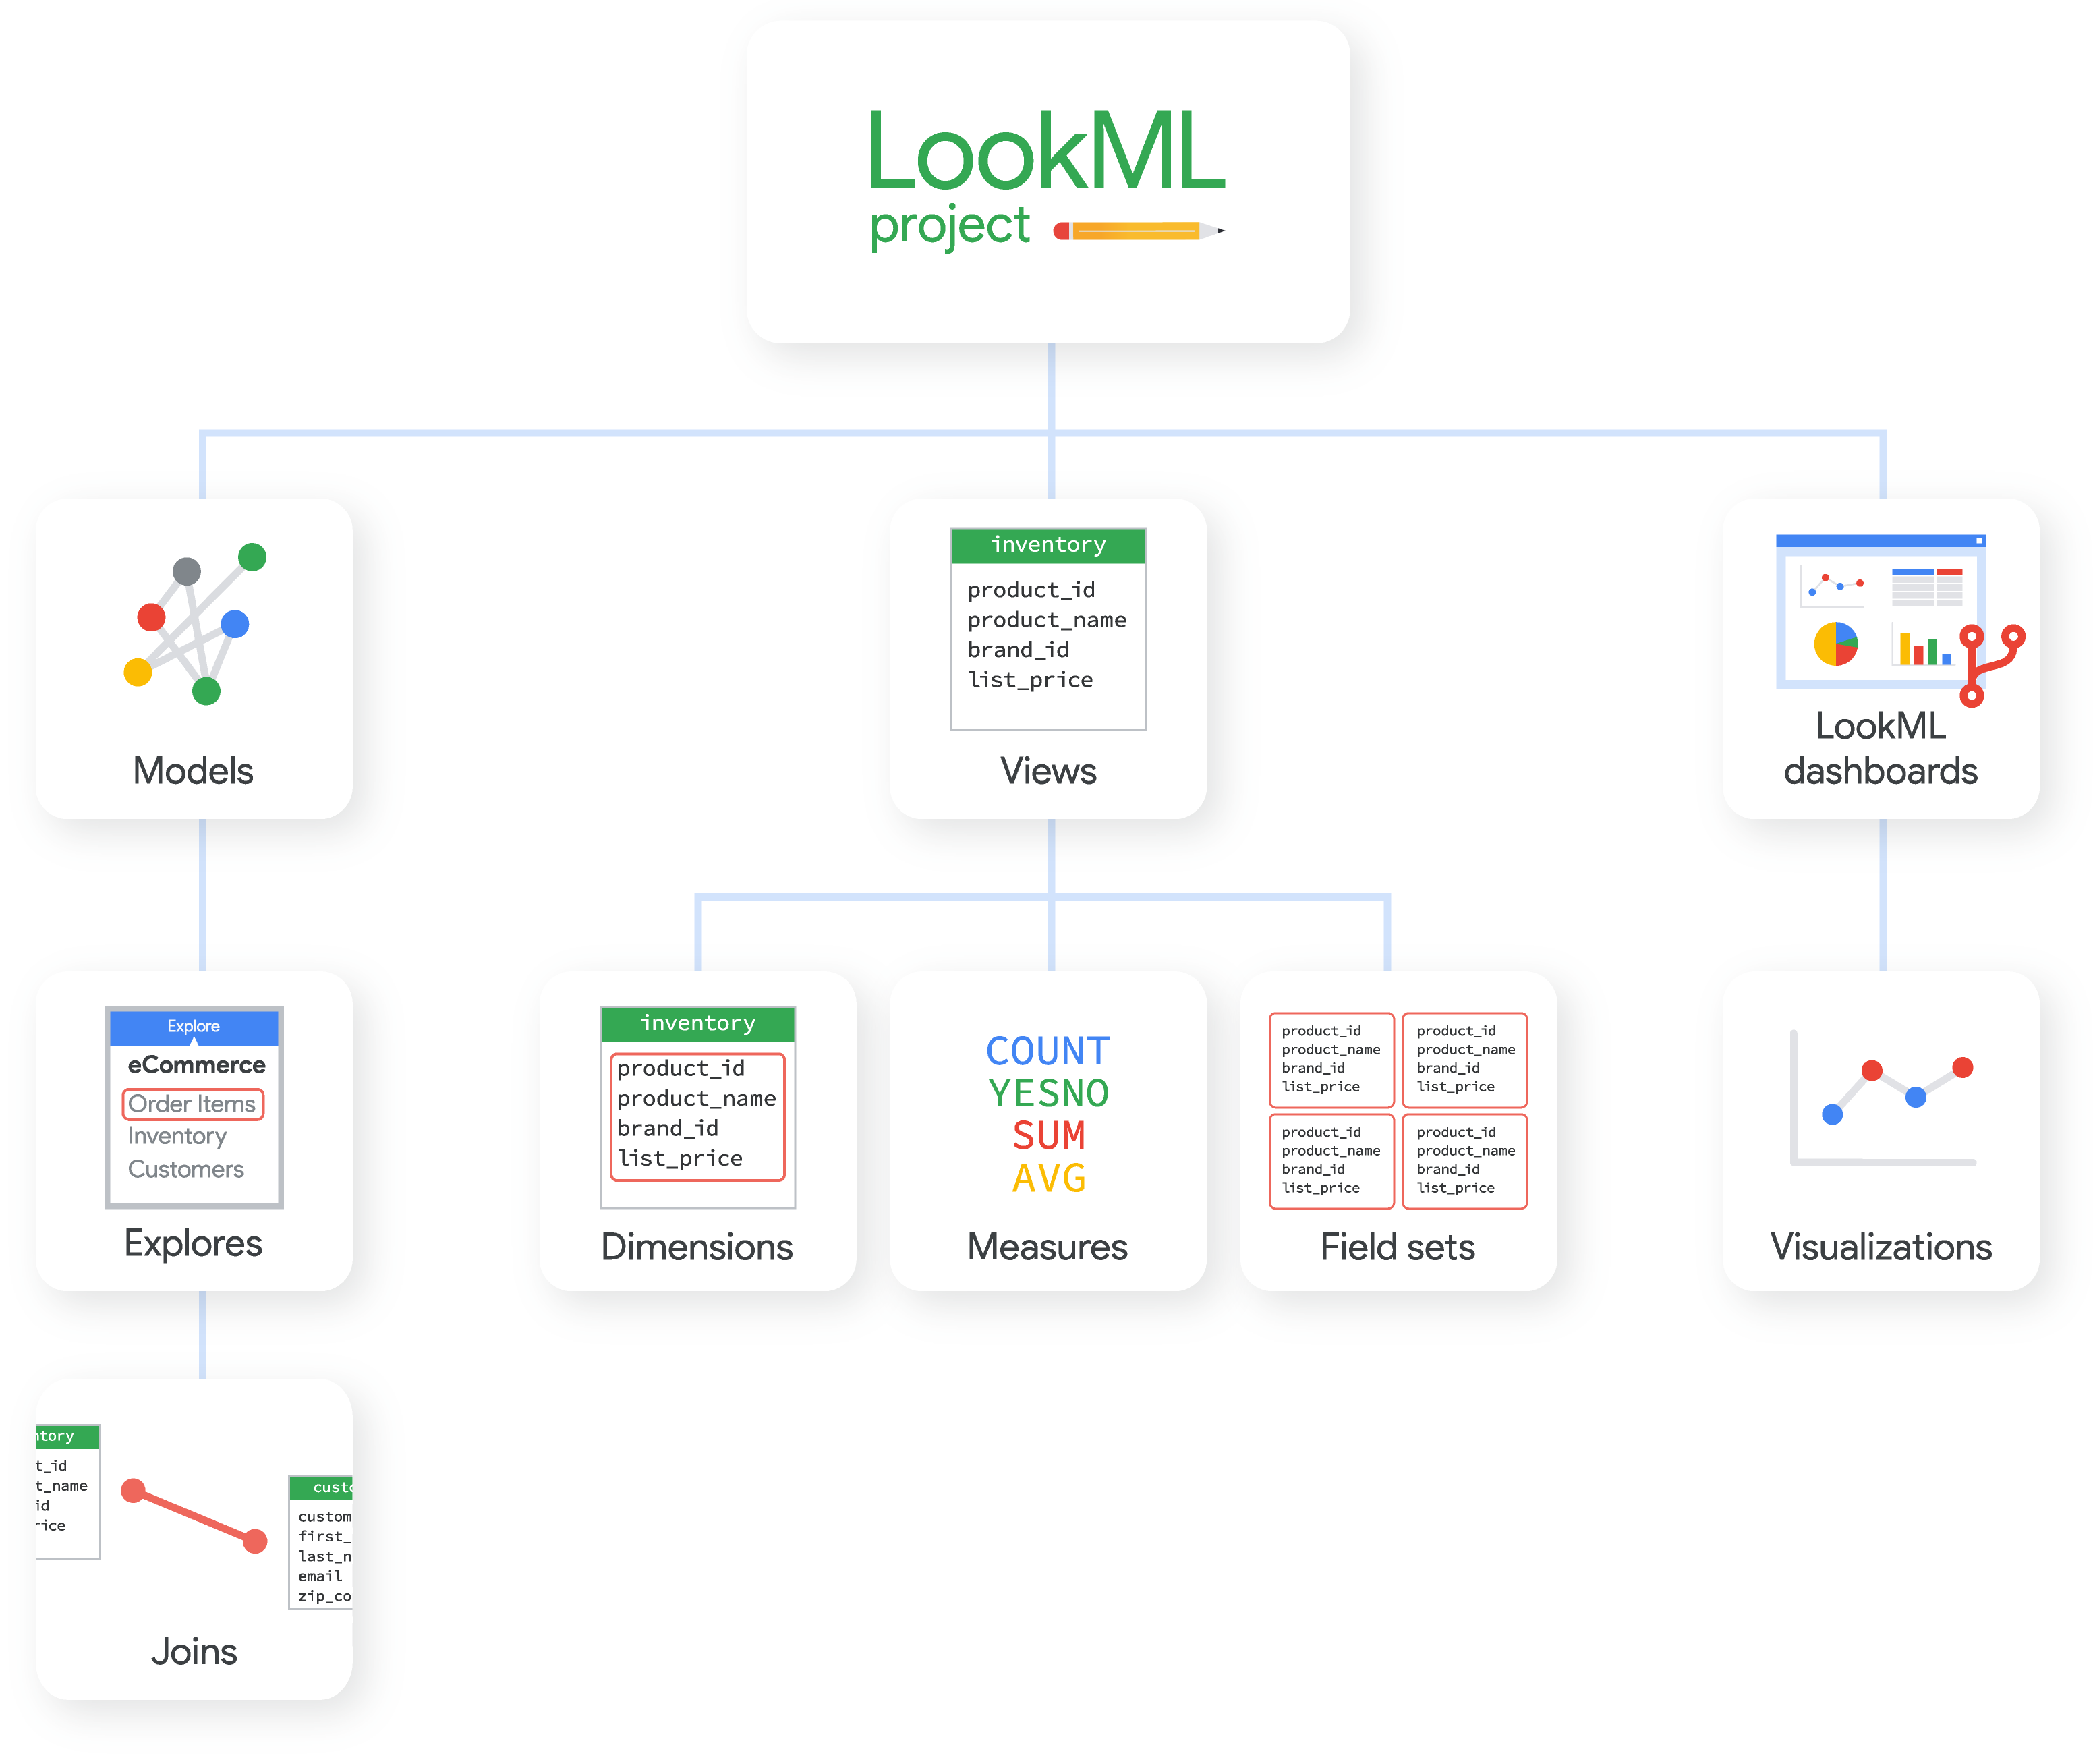 Un proyecto de LookML puede contener modelos, vistas y paneles de LookML, y cada uno de ellos está formado por otros elementos de LookML.